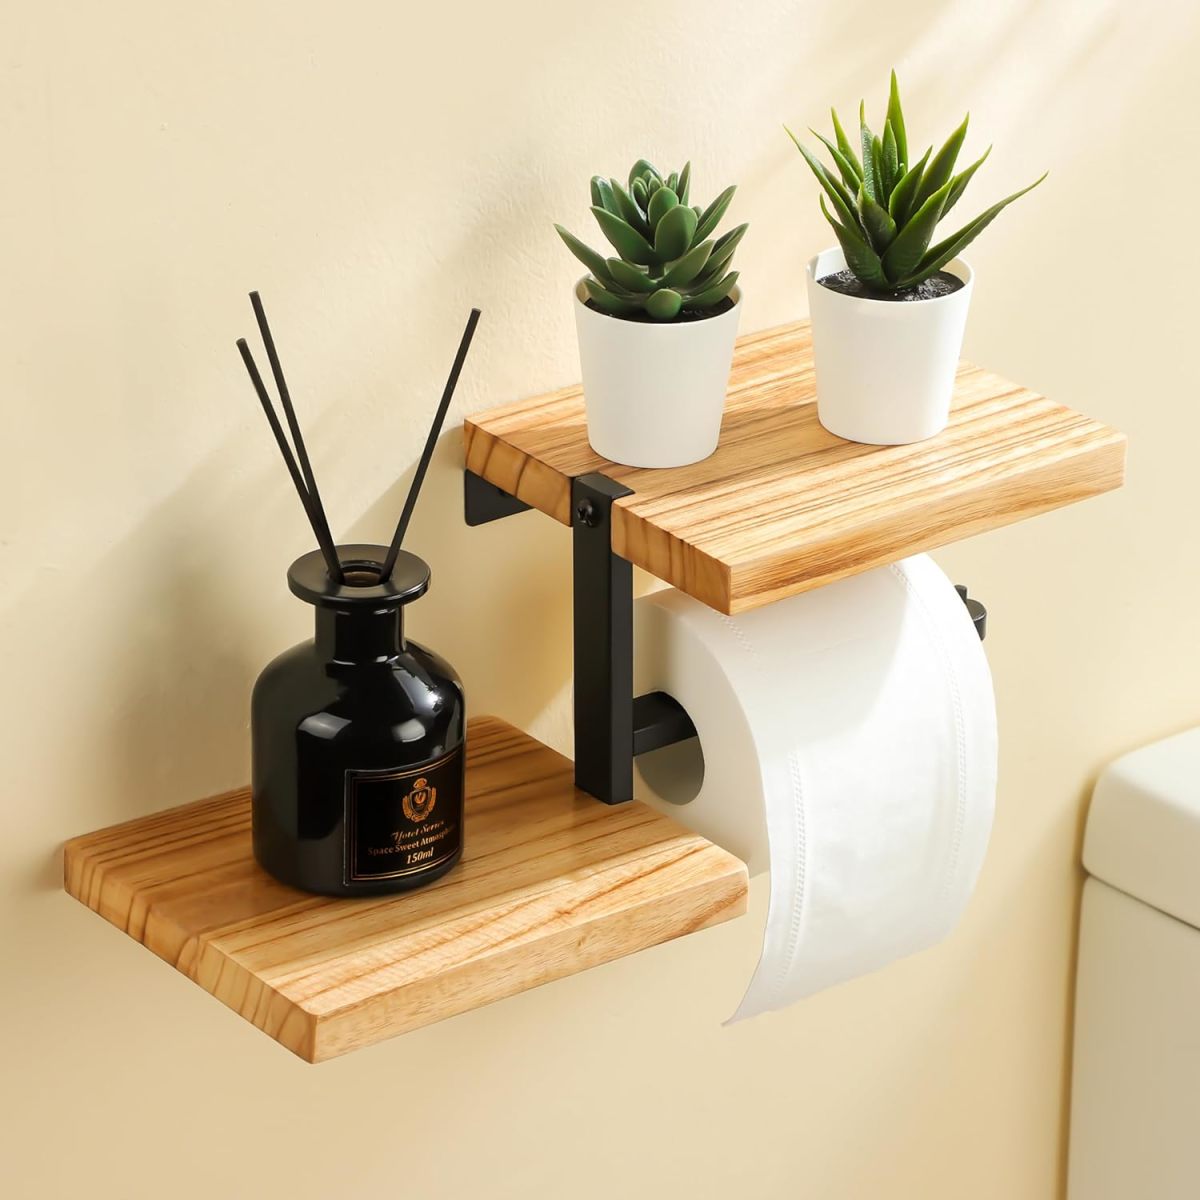 https://dengarden.com/.image/t_share/MjAzMTQzNDUyODIzNzI1MjM4/wall-toilet-paper-holder-shelves.jpg